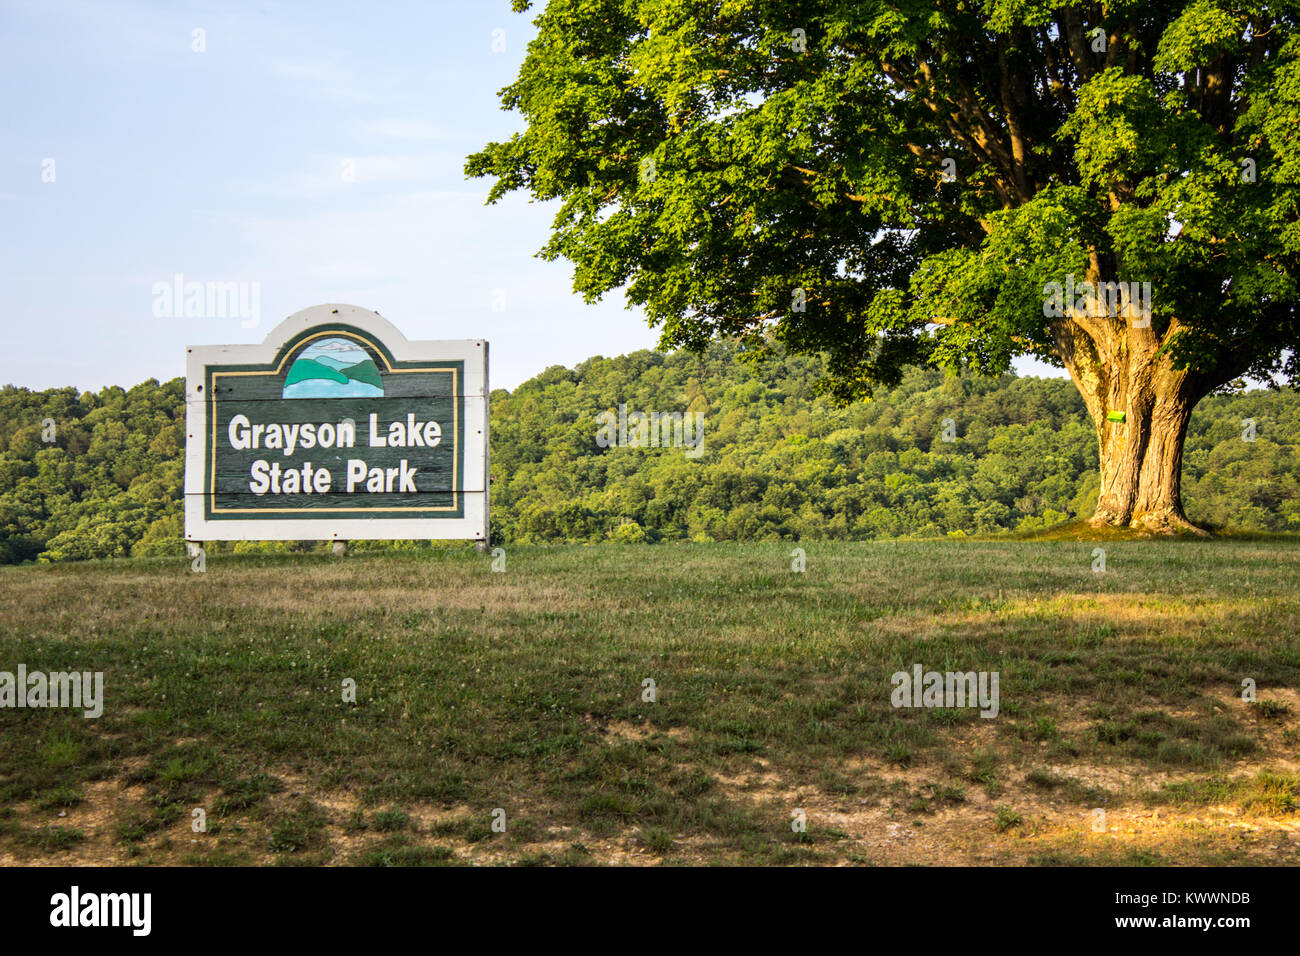 Grayson, Kentucky, Stati Uniti d'America - 12 Giugno 2015: segno di benvenuto per Grayson lago del Parco statale in Kentucky. Grayson Lago comprende più di 1500 acri. Foto Stock